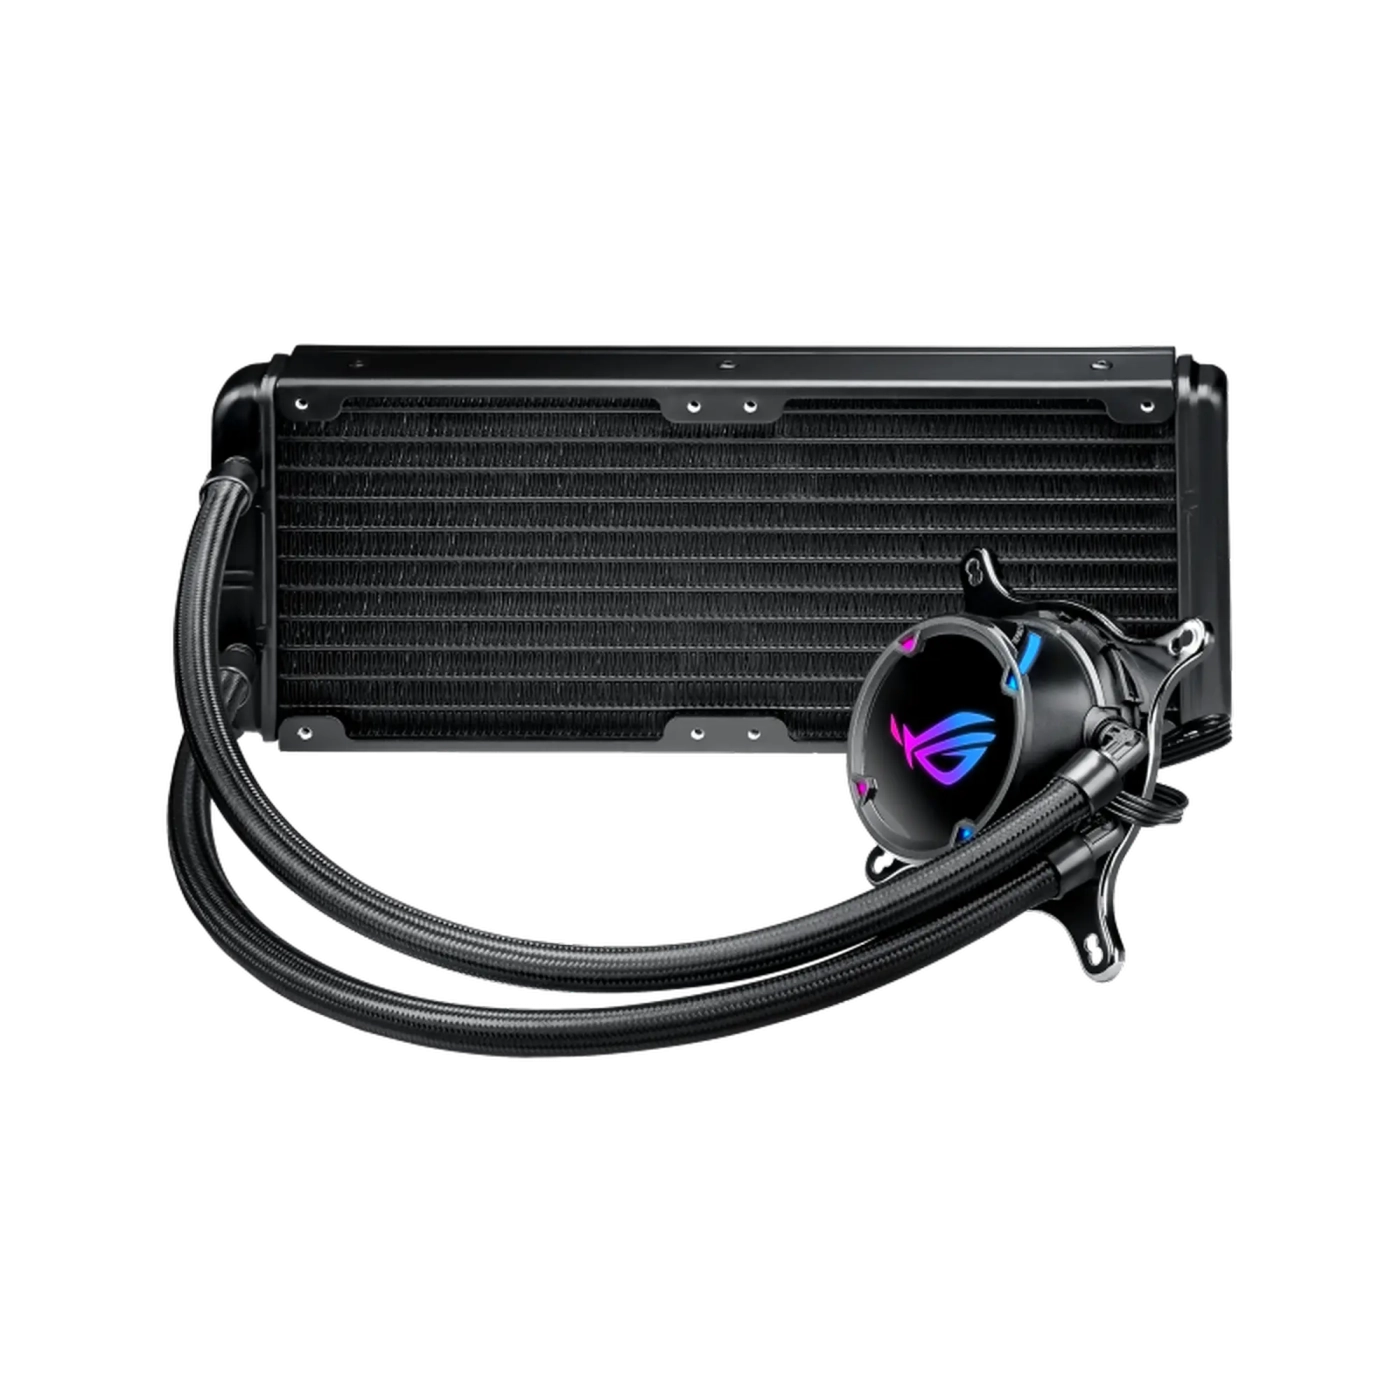 Купить Система жидкостного охлаждения ASUS ROG Strix LC 240 Aura Sync RGB 2x120mm fan (ROG-STRIX-LC-240) - фото 2